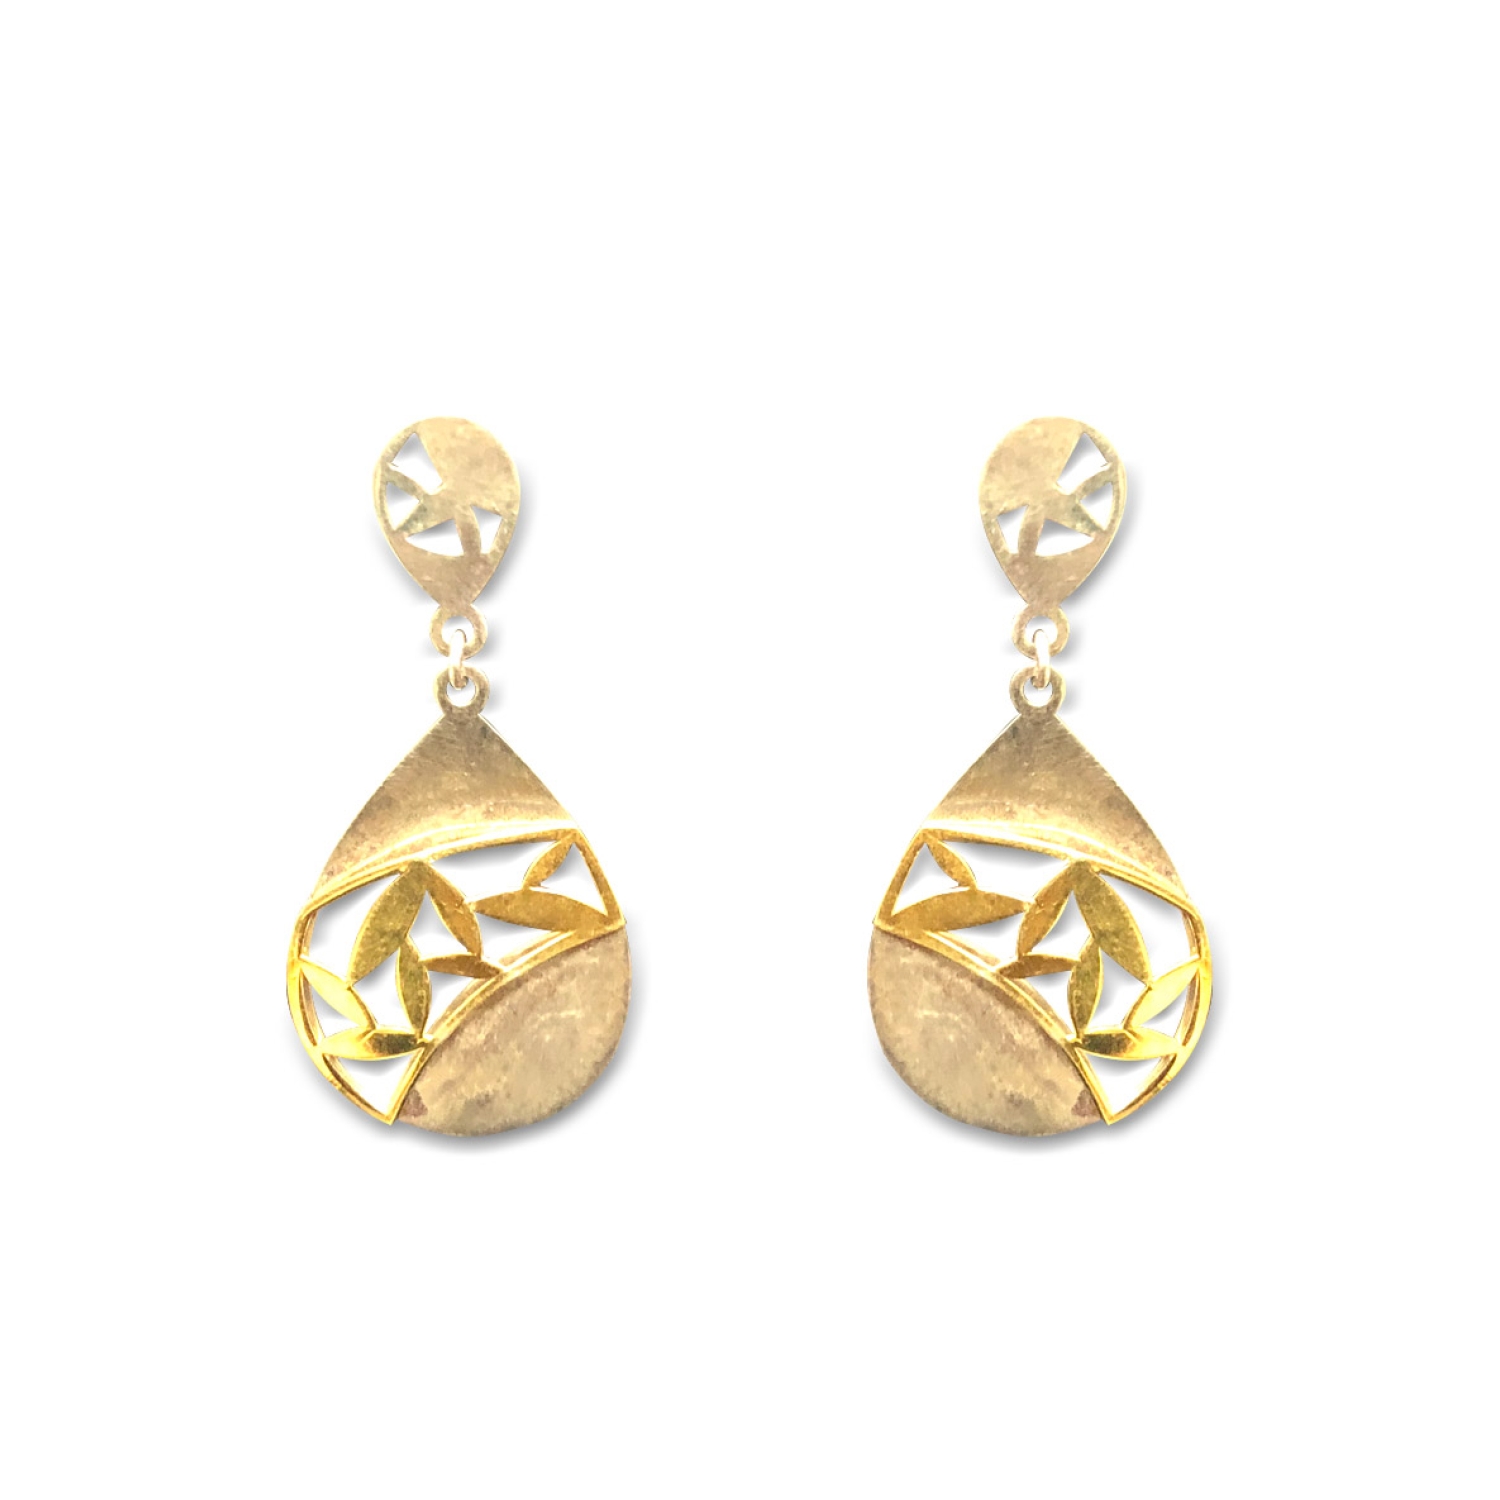 Buy Sterling Silver Floral pearl Earrings Online - MeerMankaa